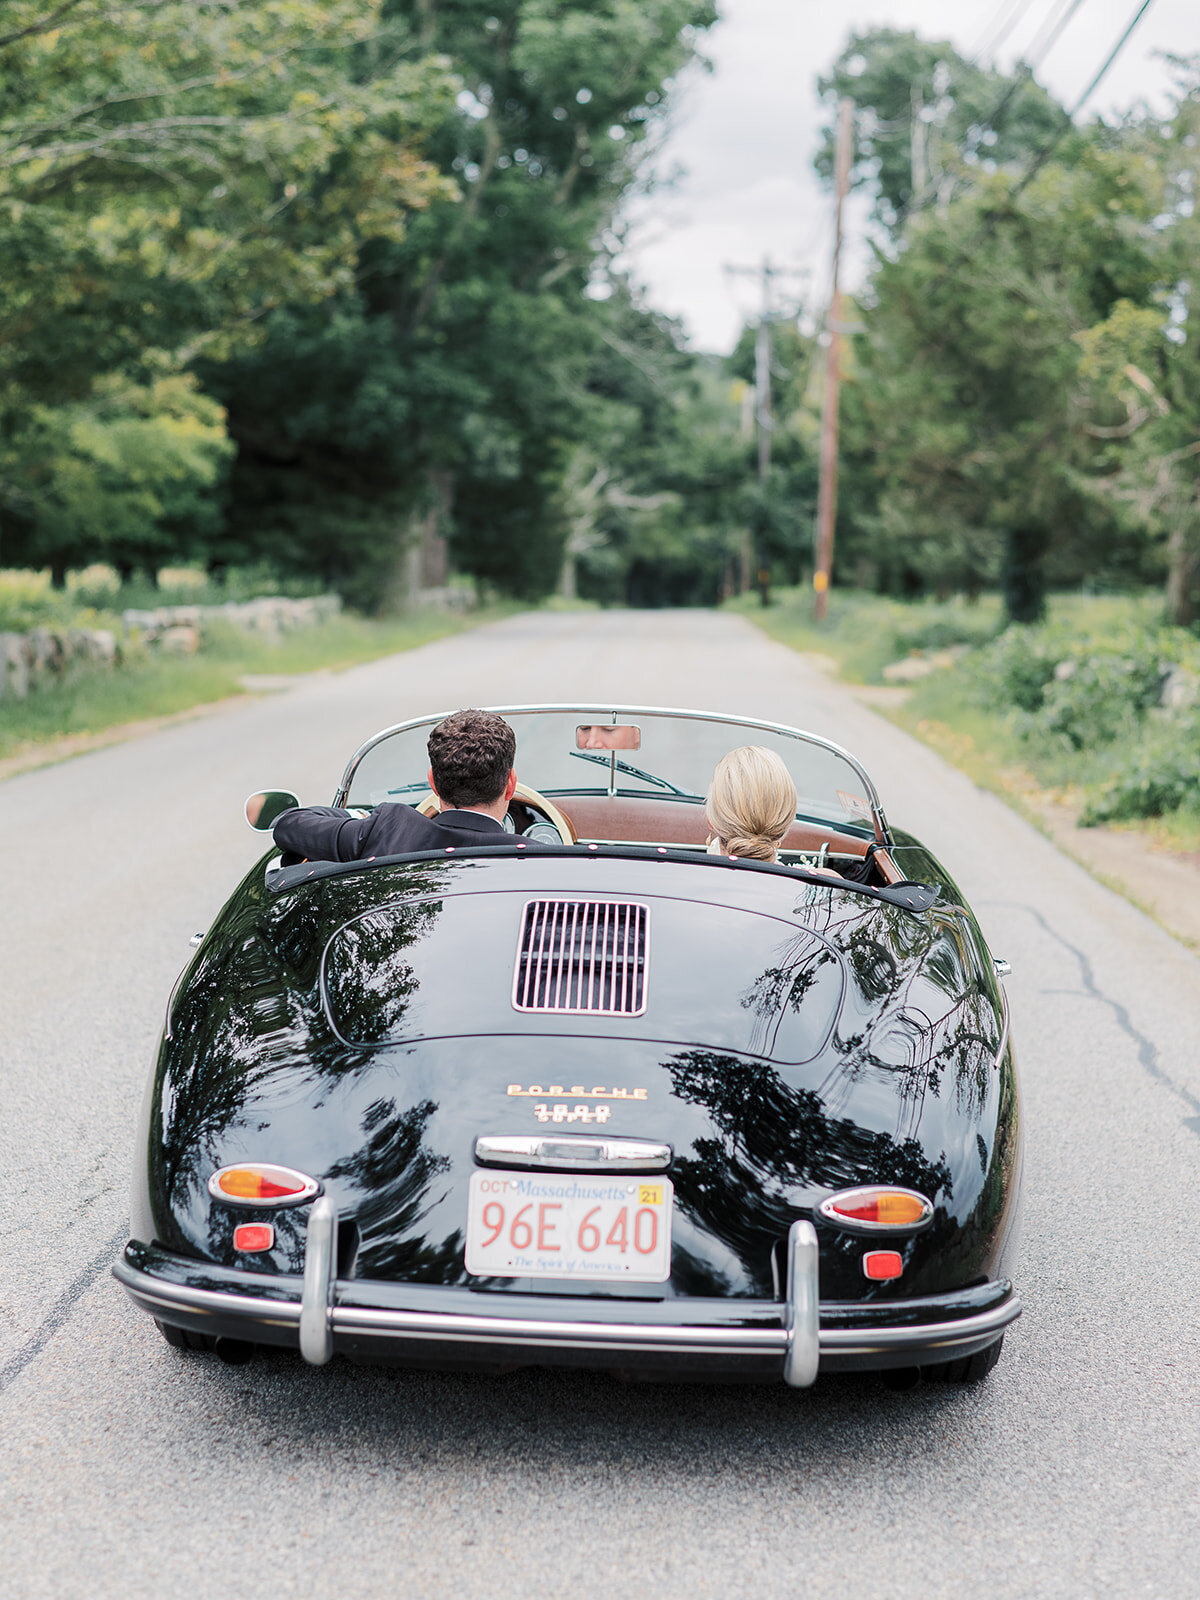 Kate-Murtaugh-Events-Boston-MA-wedding-planner-bride-groom-vintage-Porsche